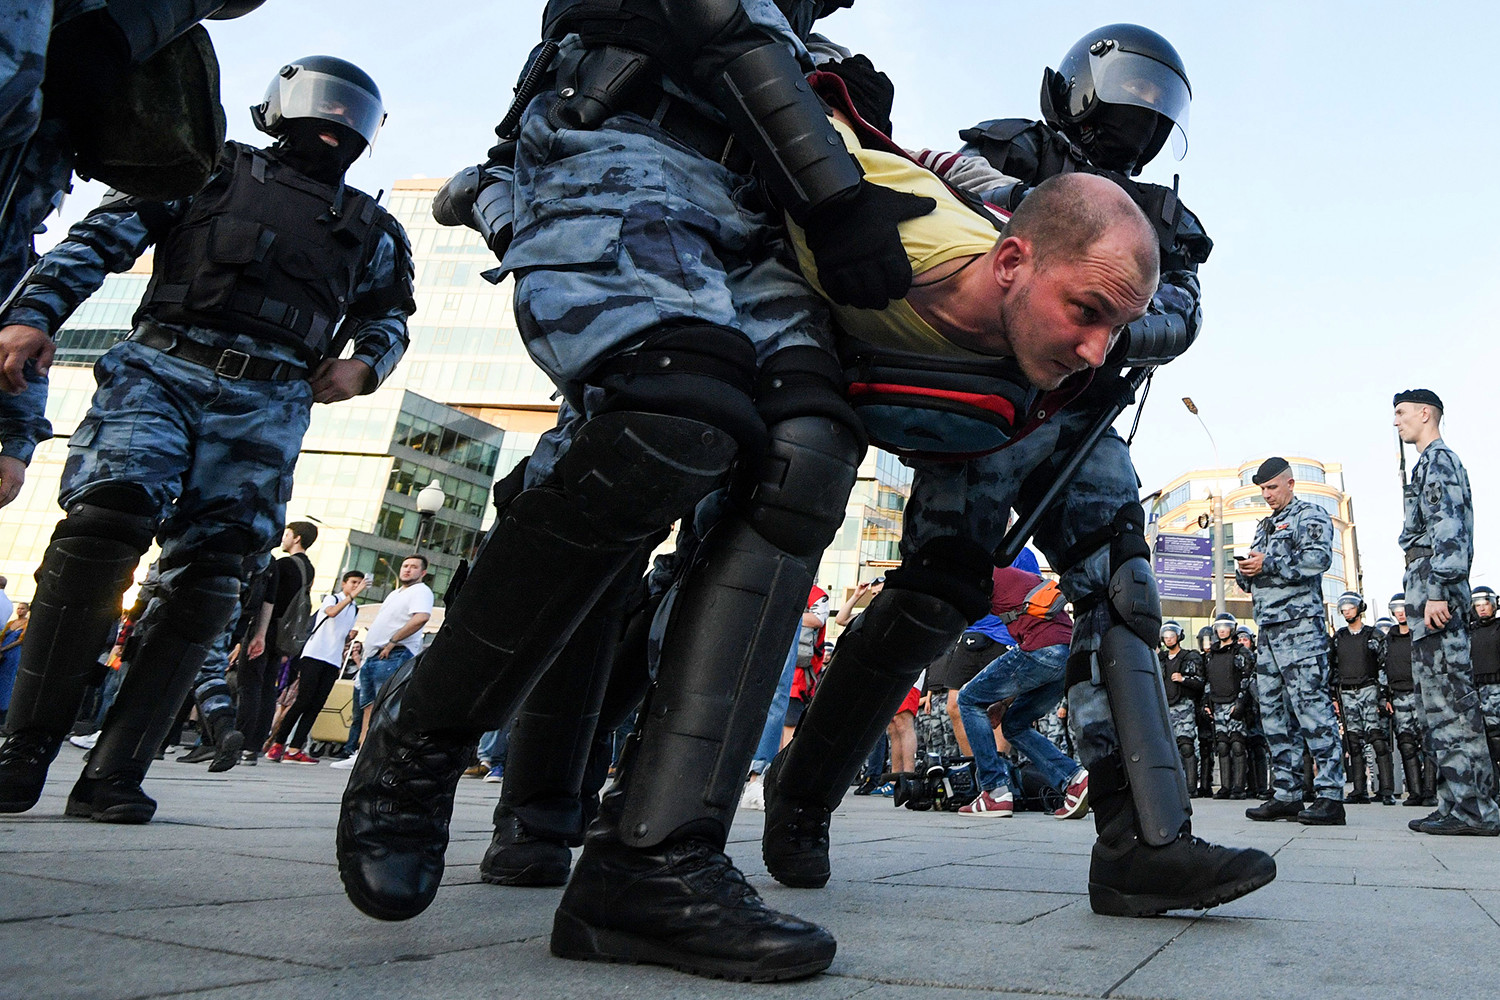   Các sĩ quan cảnh sát chống bạo động bắt giữ một người biểu tình trong một cuộc biểu tình trái phép yêu cầu các ứng cử viên độc lập và đối lập được phép ra tranh cử trong cuộc bầu cử địa phương vào tháng 9 tại Quảng trường Trubnaya của Moscow vào ngày 27/7.  